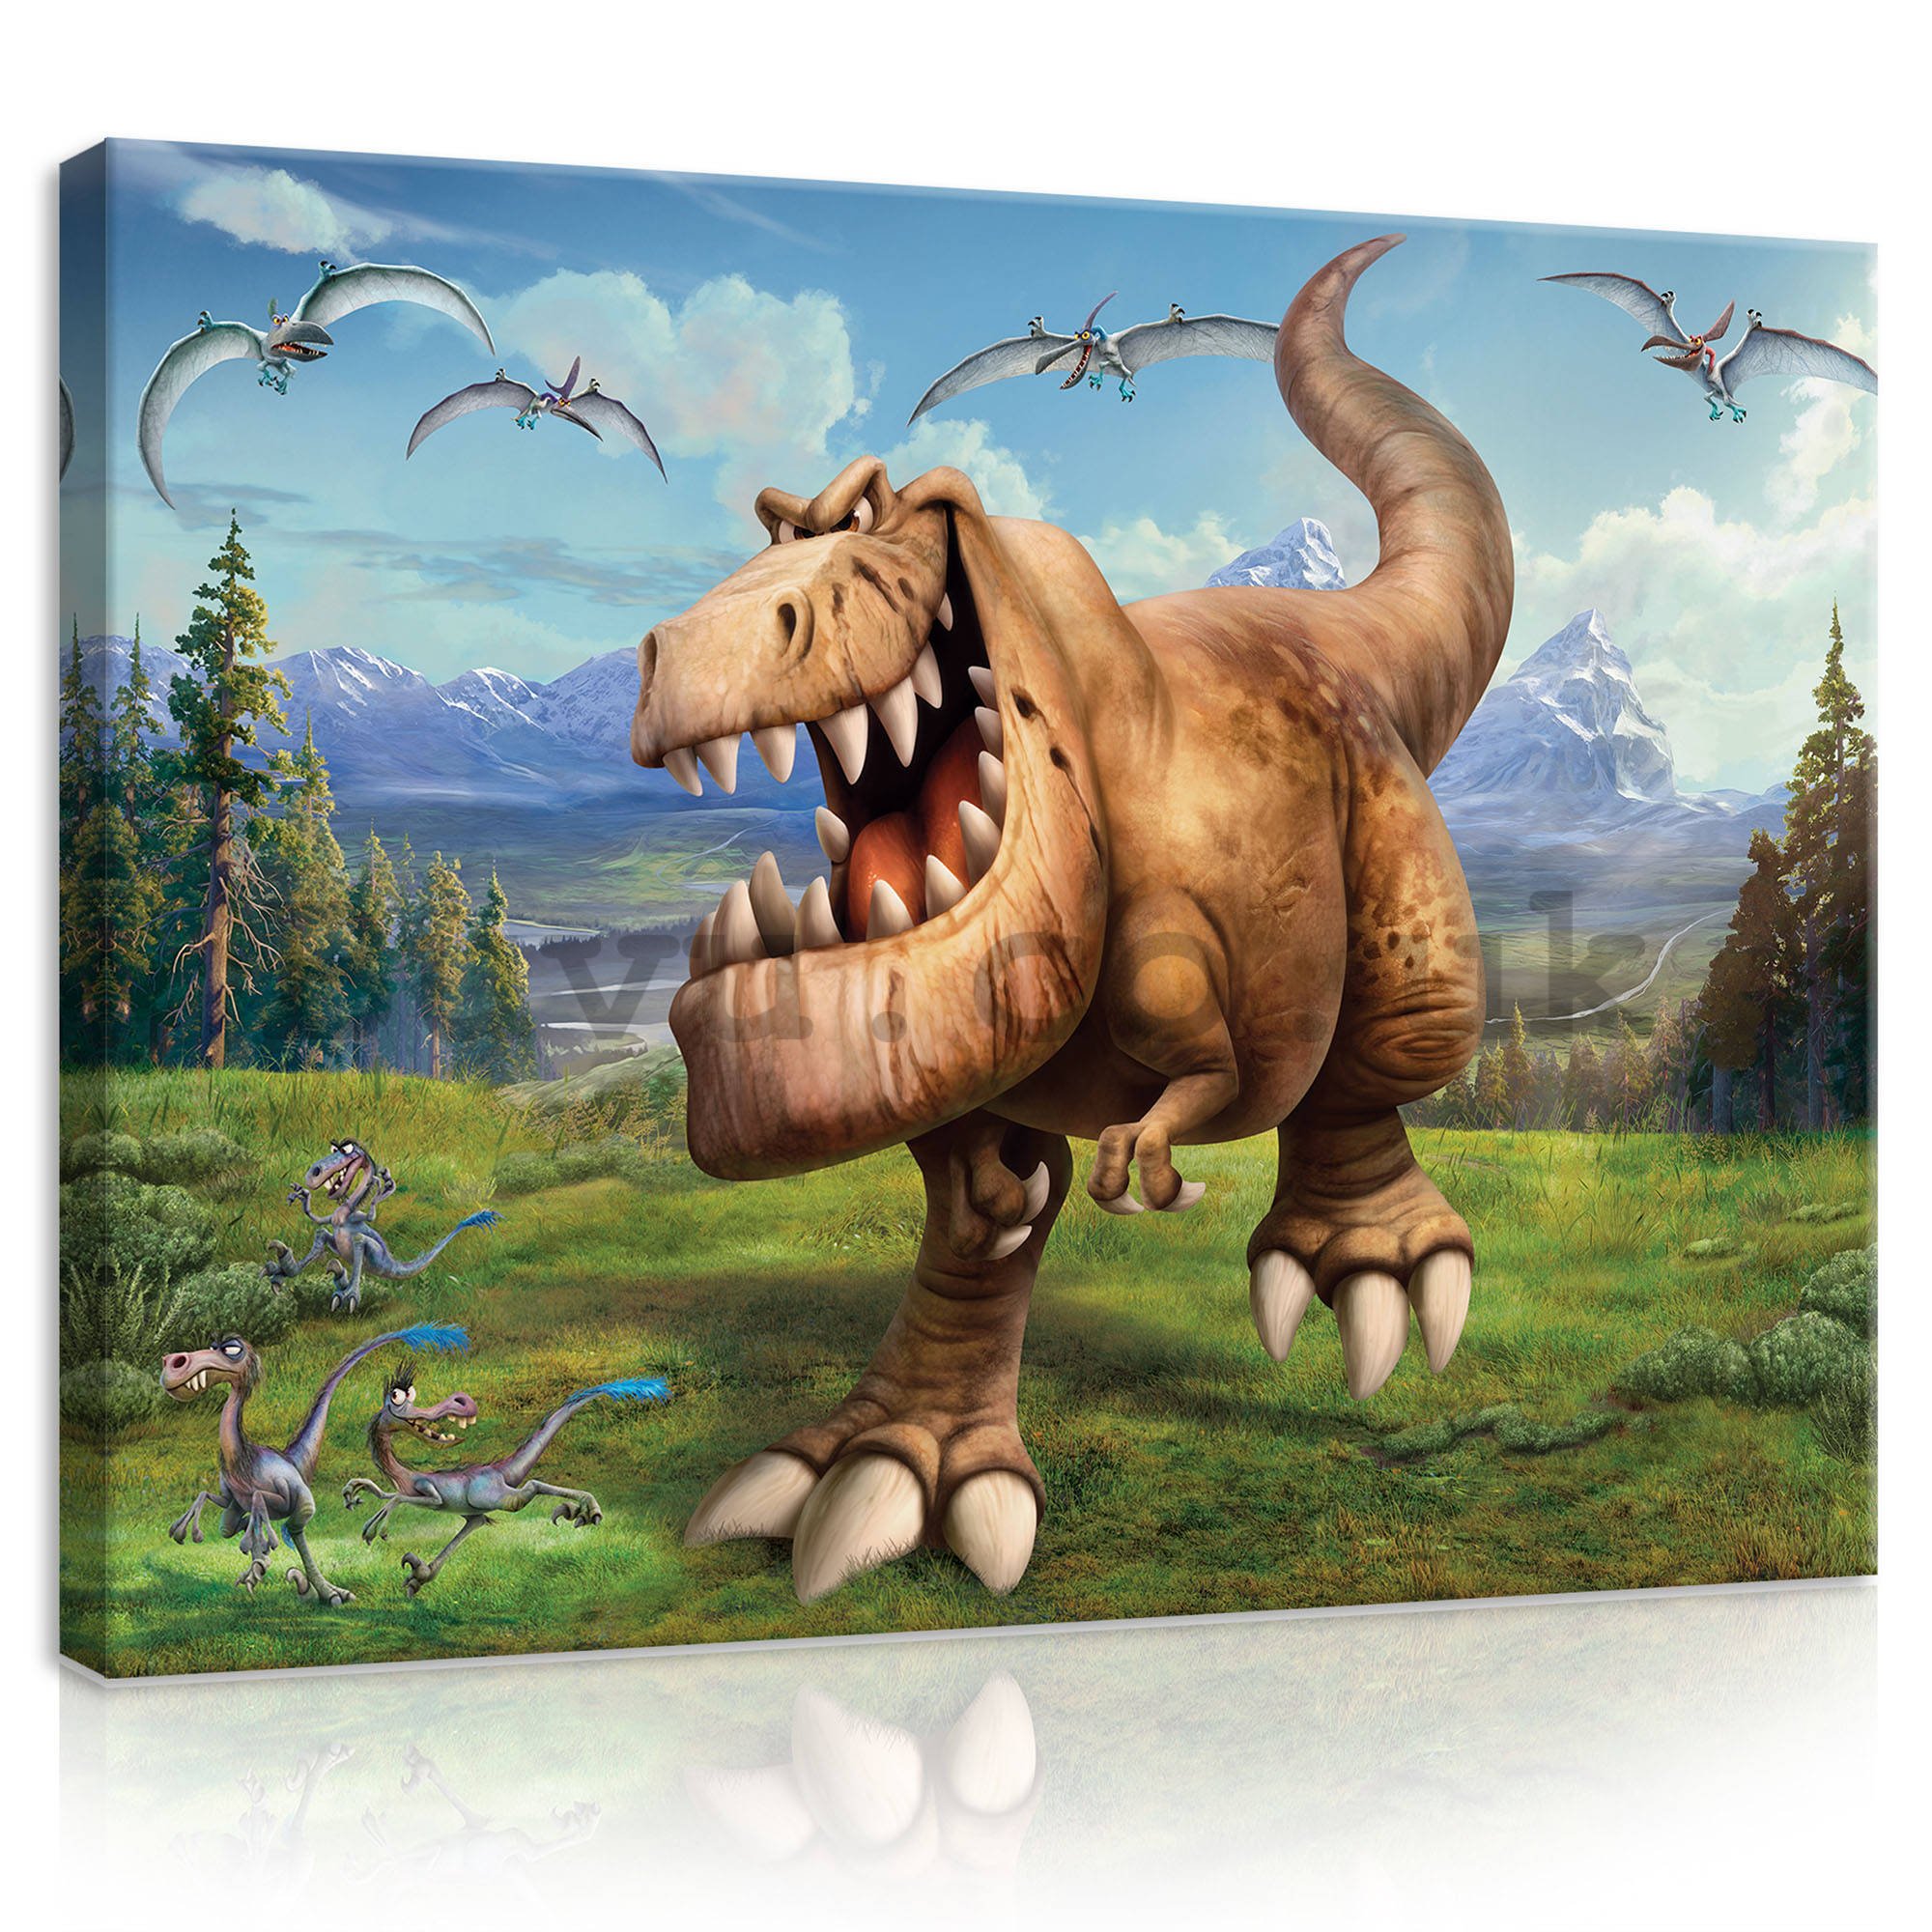 Painting on canvas: The Good Dinosaur Butch (5) - 80x60 cm